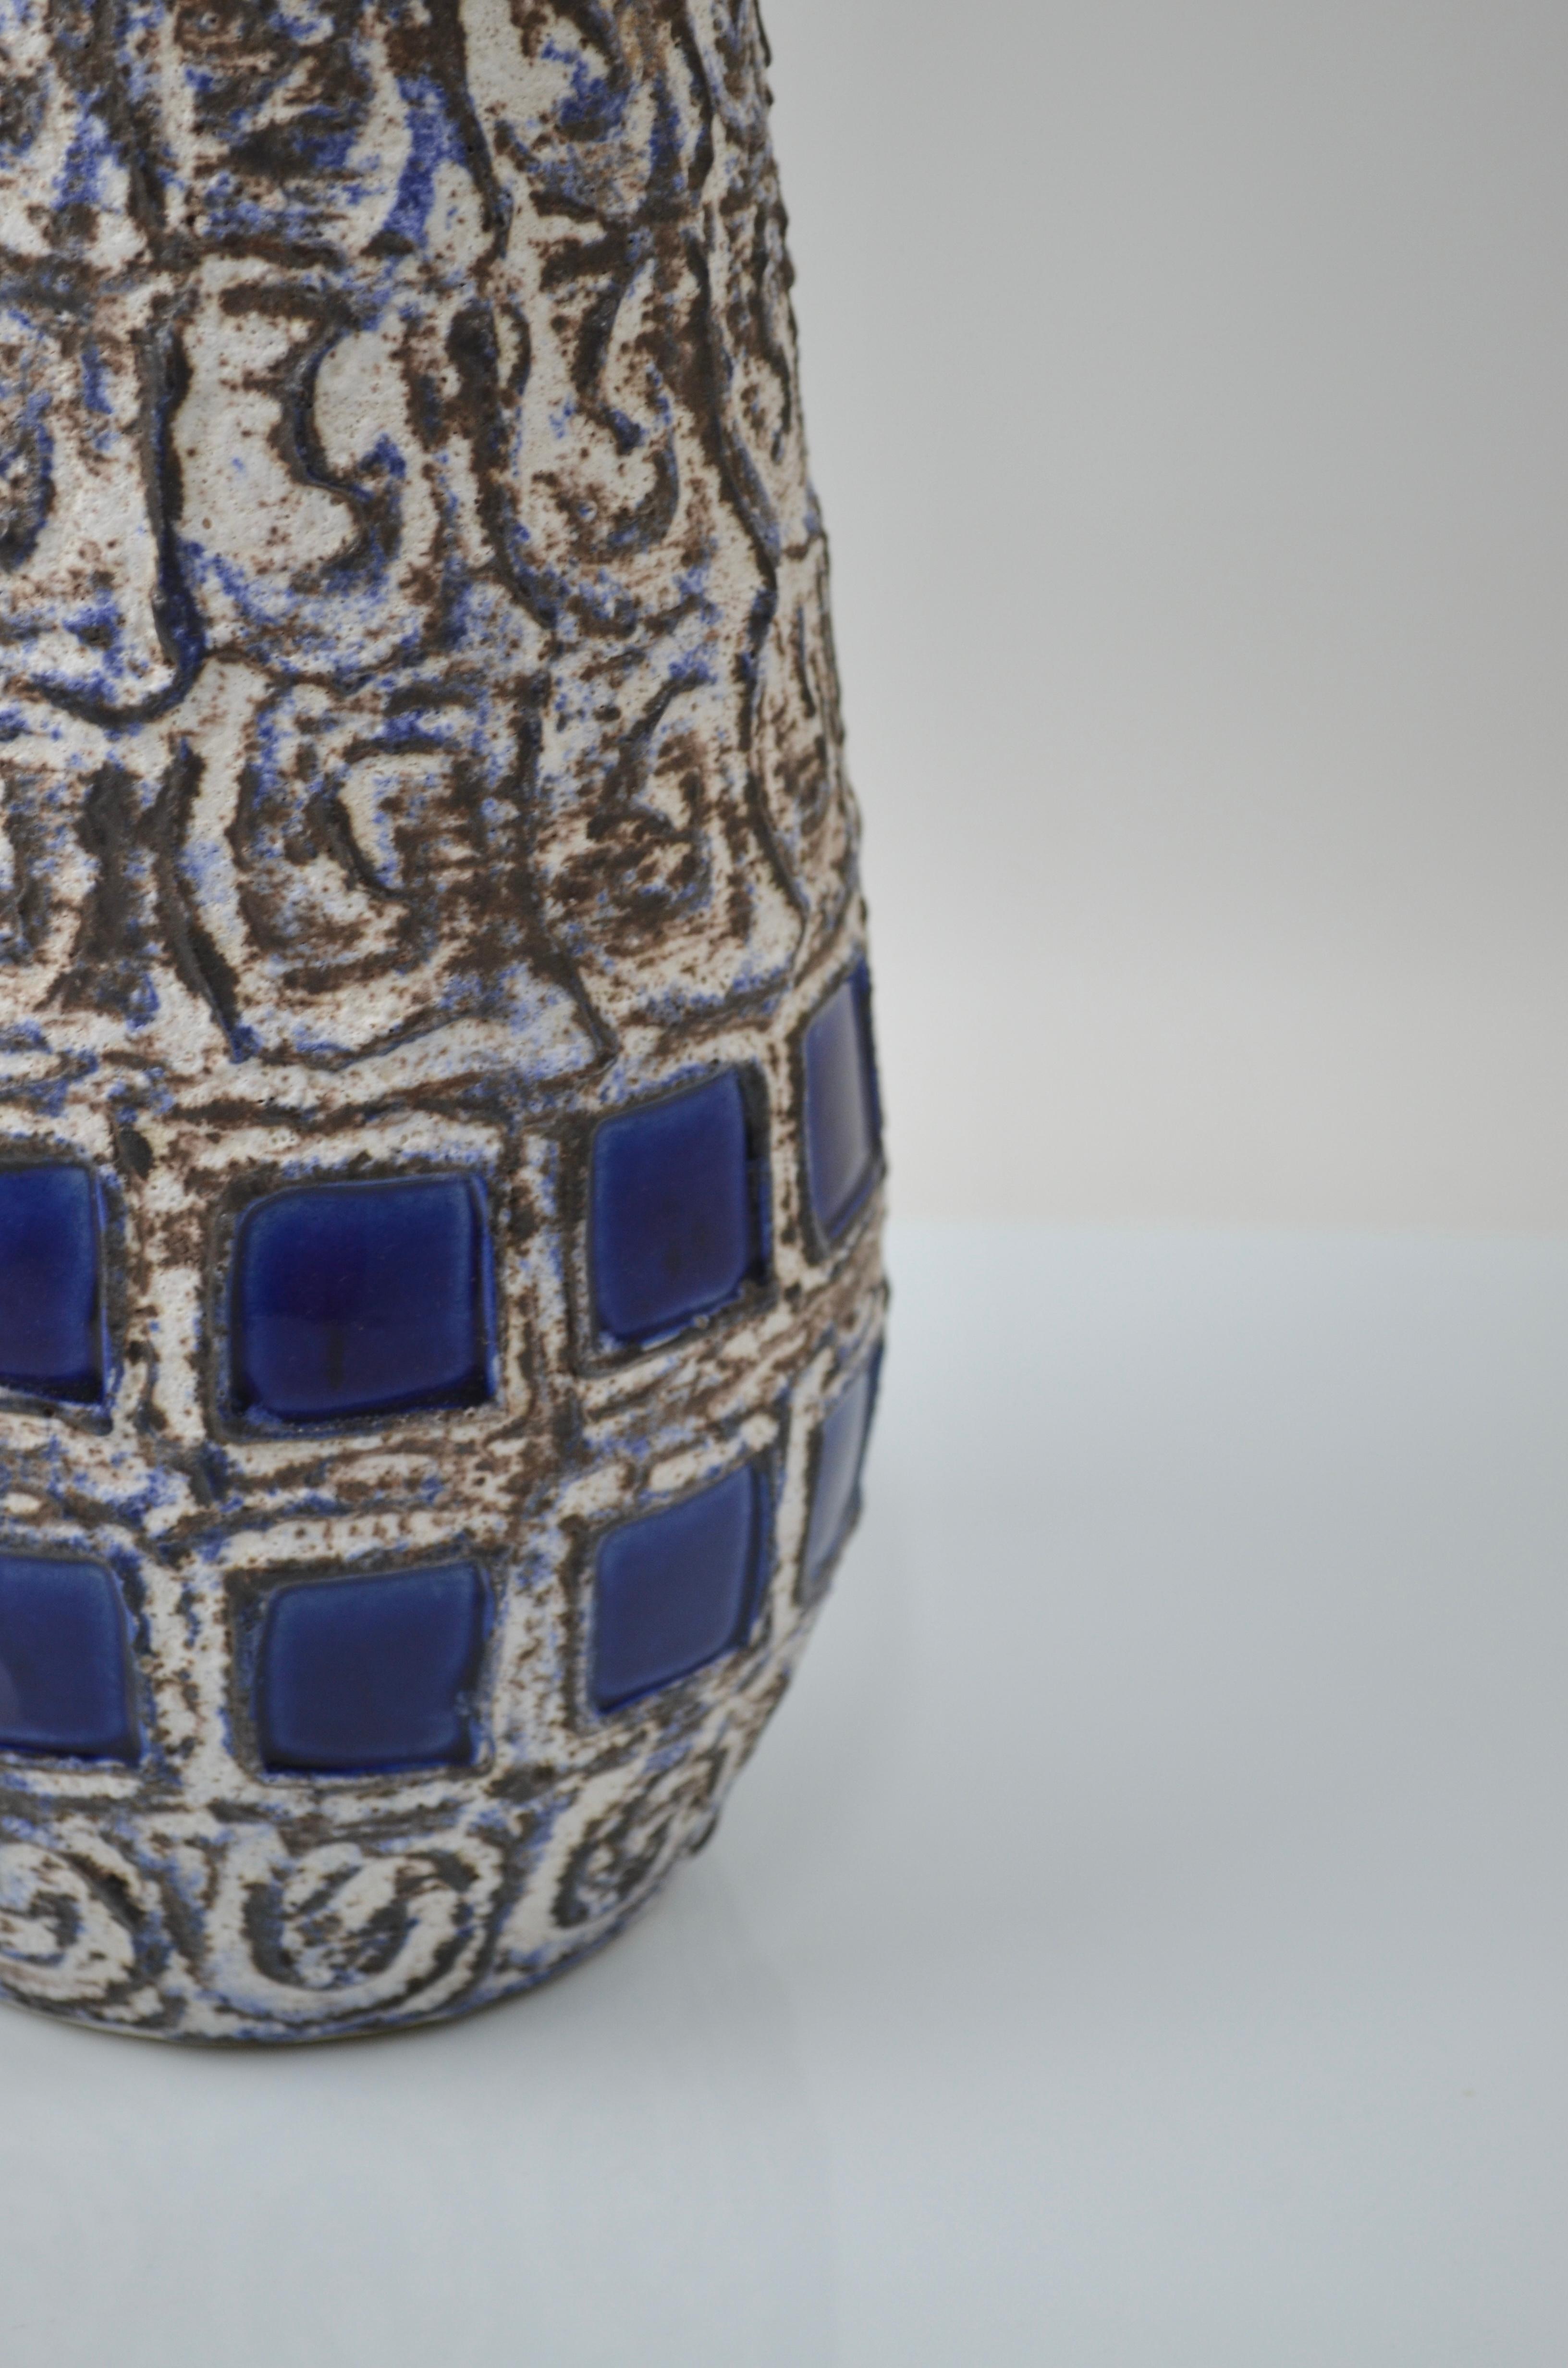 Large Ceramic Vase Capri by Ilse Stephan for Schlossberg, 1960s For Sale 1